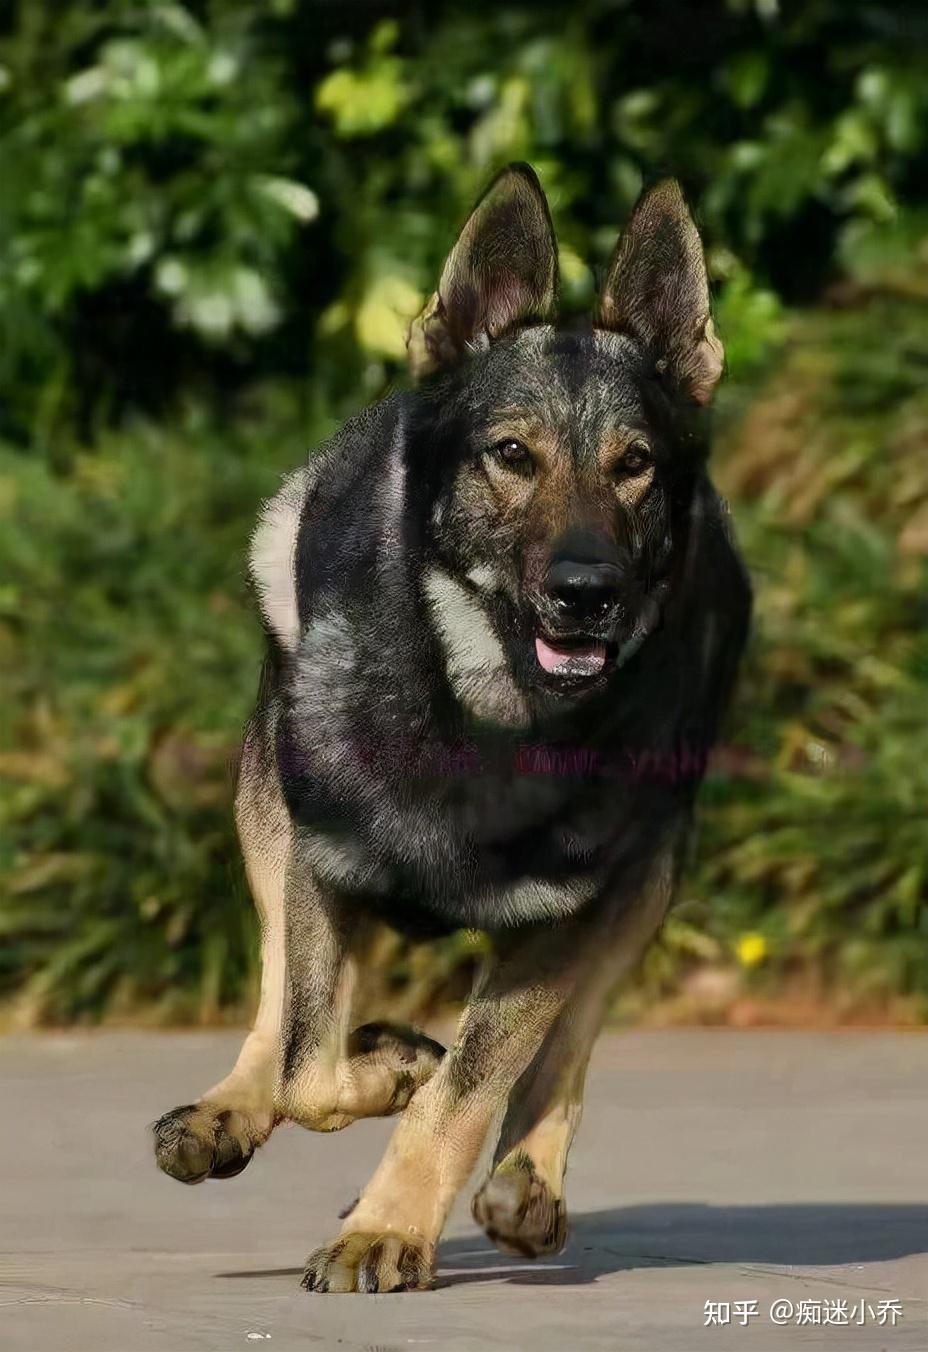 昆明犬是由昆明警犬研究基地培育改良的犬种,忠诚可靠,体制强壮,外形